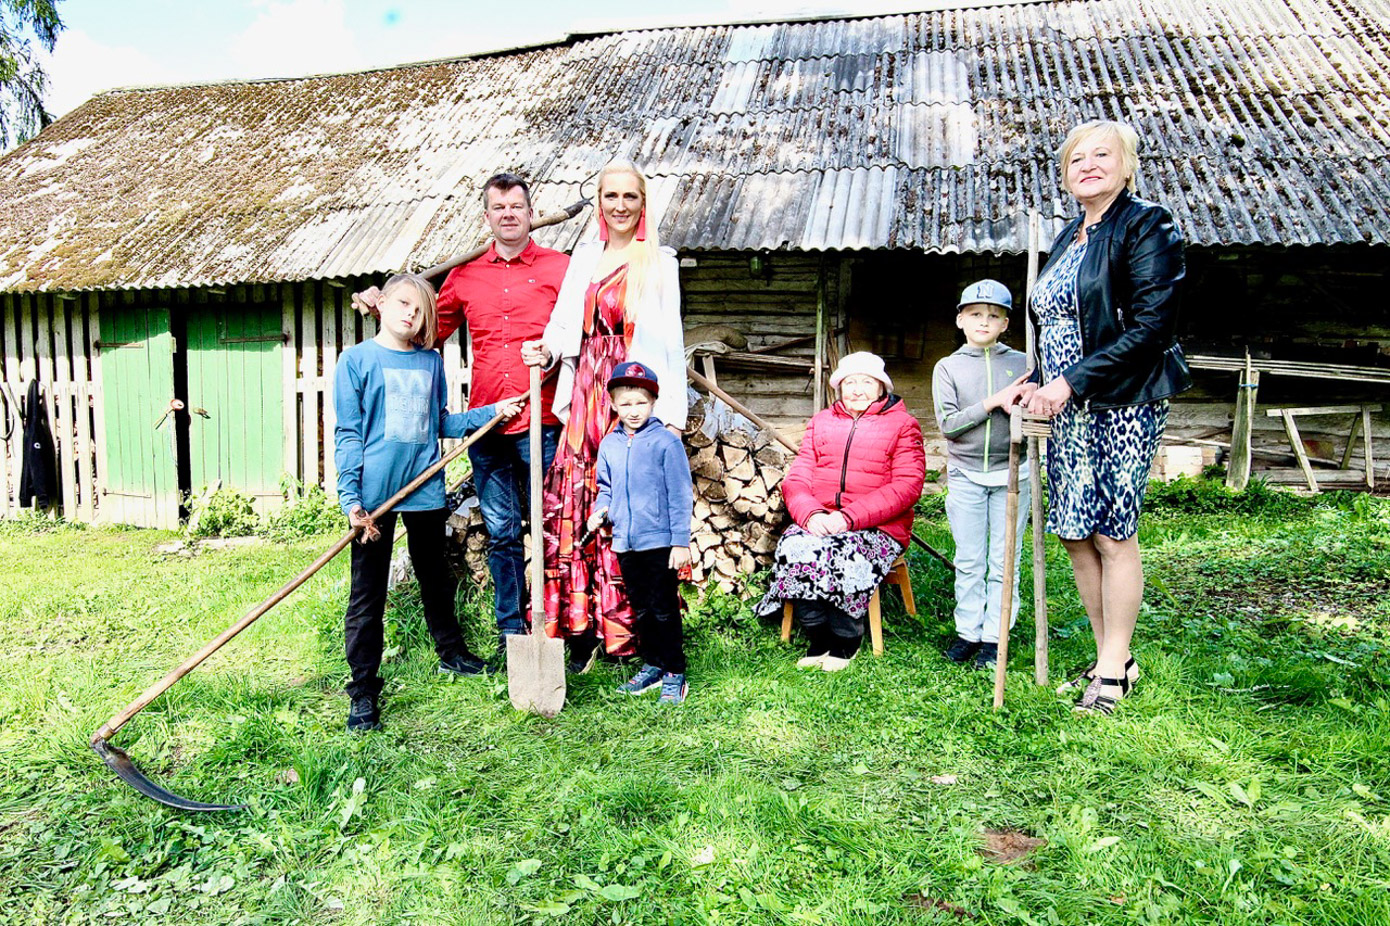 Neli põlvkonda Metstare talu aida ees.  Nagu töökale perele kohane, on kõigil  mingi talus kasutatav tööriist käes. Pildil  Ragnar (vasakult), abikaasa Lauri, Ave,  Sander, ema, vanaema, vanavanaema  Leili Annom (92) ning ema ja vanaema  Eda Tarend.